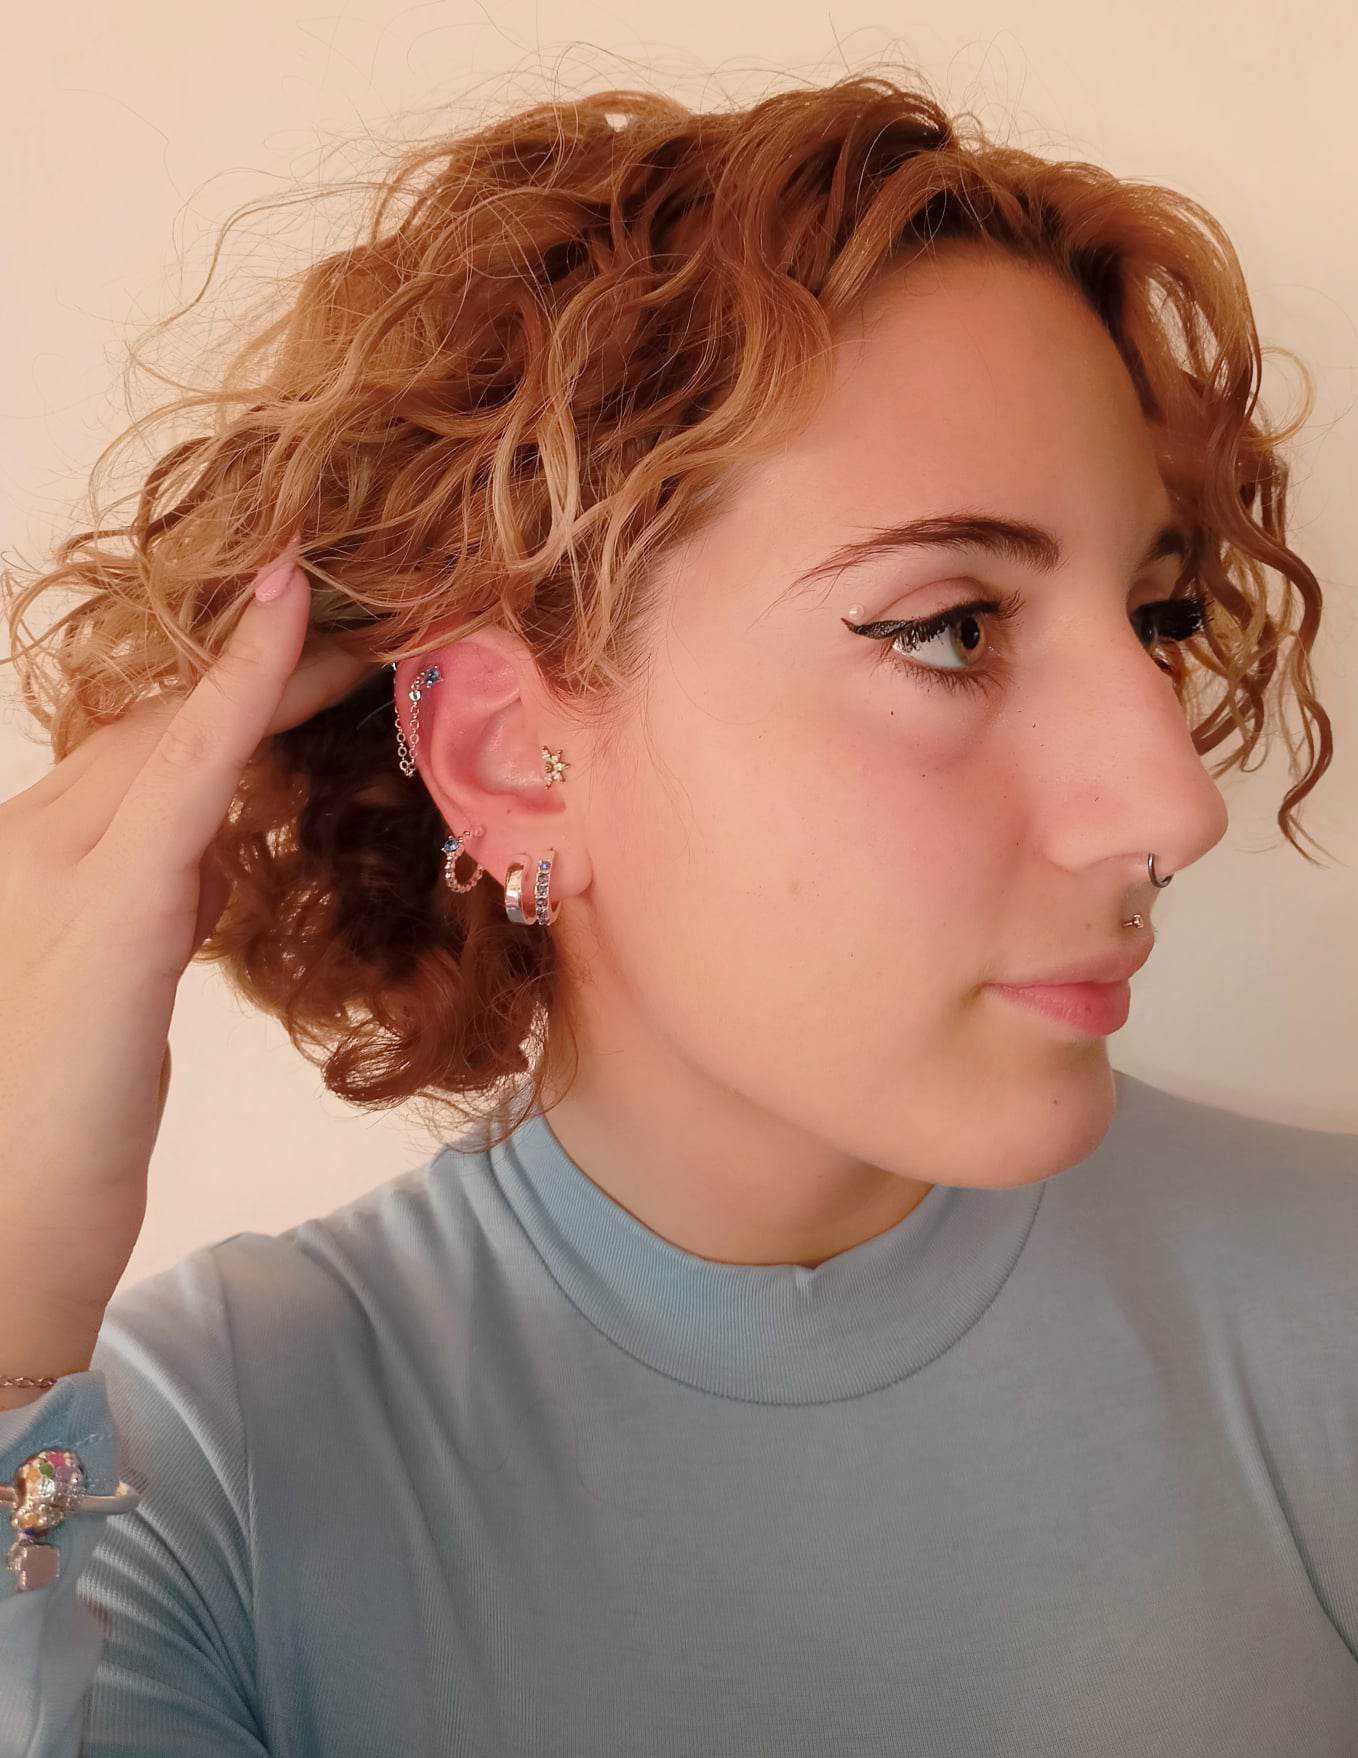 Gioielli per piercing orecchie: come fare l'upgrade del piercing